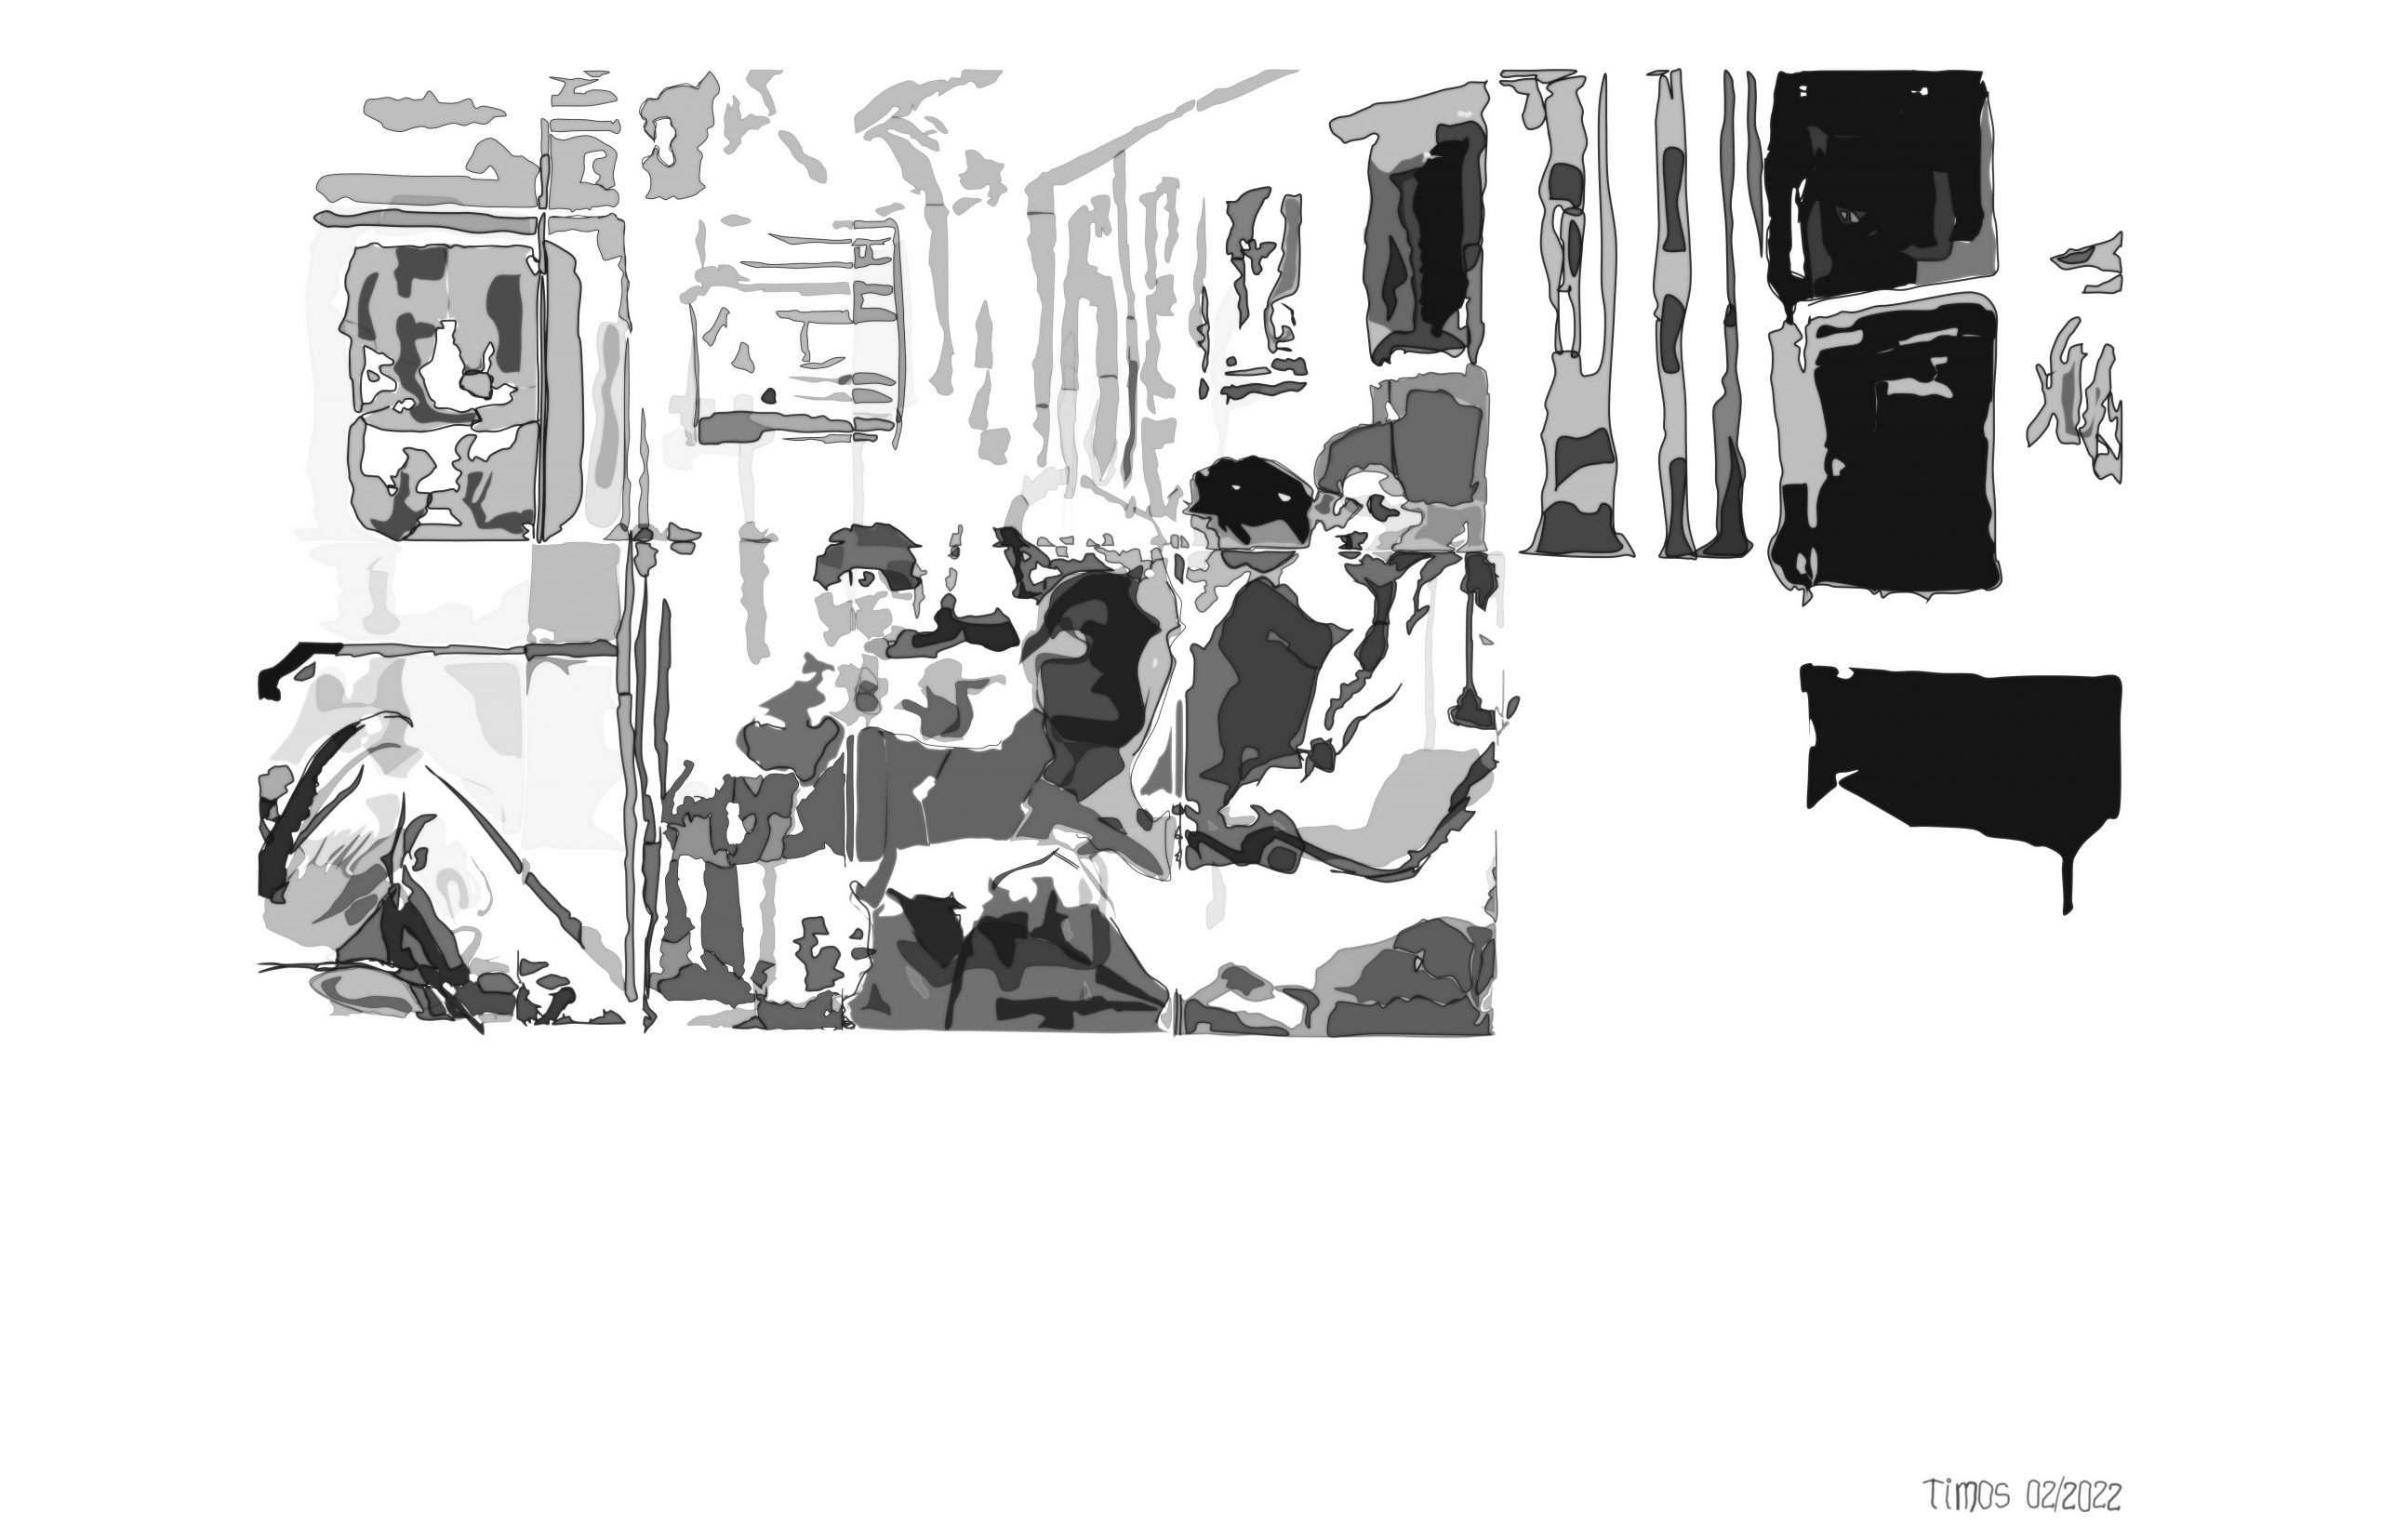 NYC subway scene | 02.14.2022